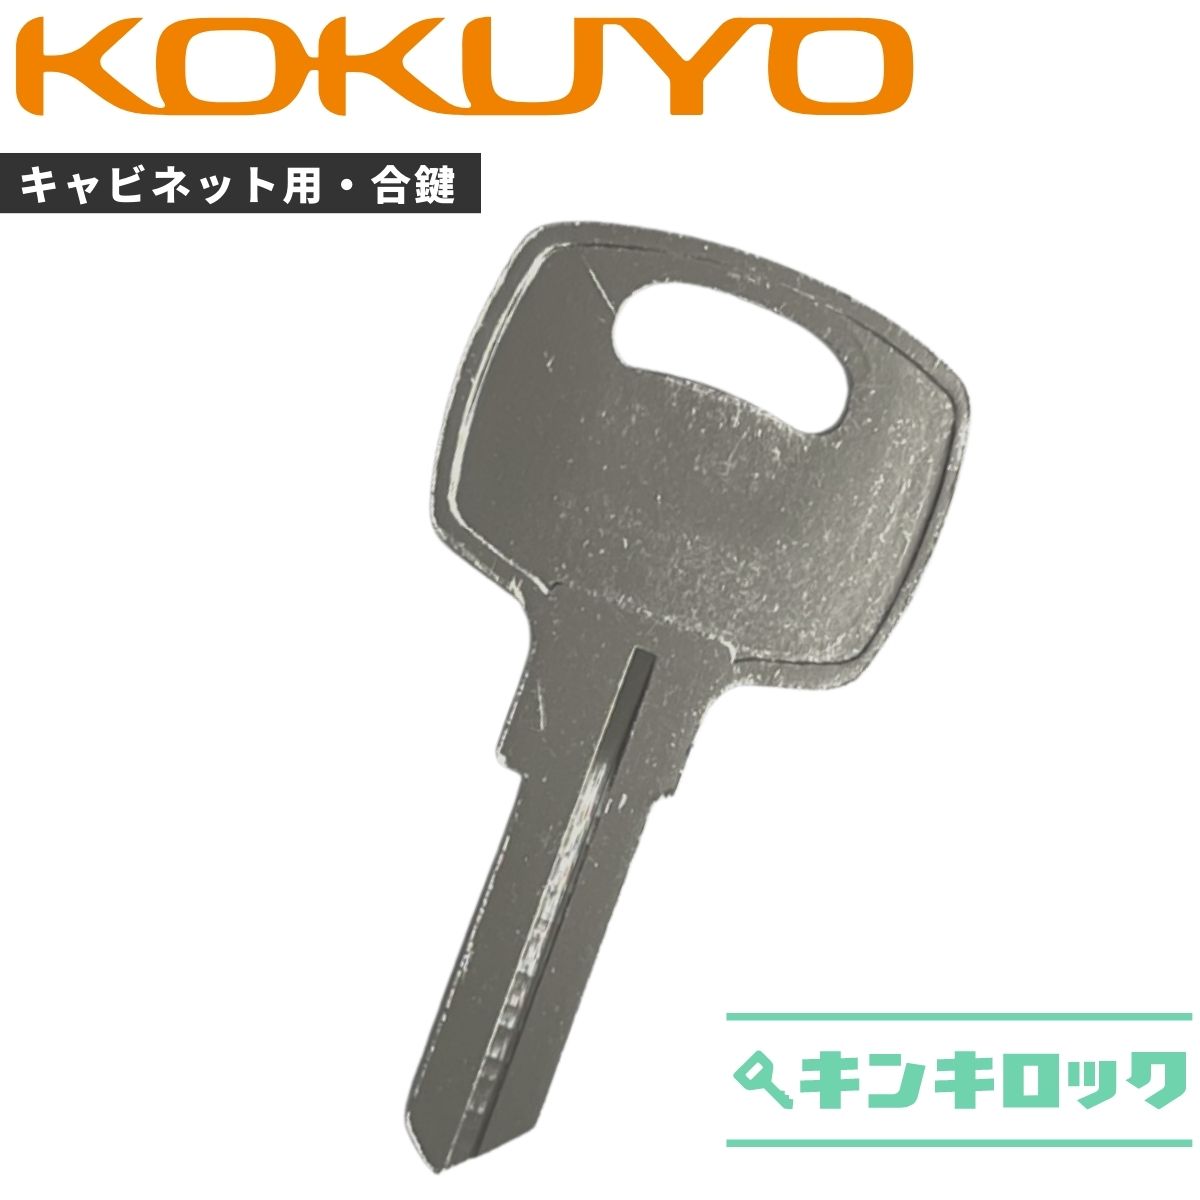 【楽天市場】コクヨ KOKUYO キーボックス ＫＦＢ 【純正キー】 鍵 